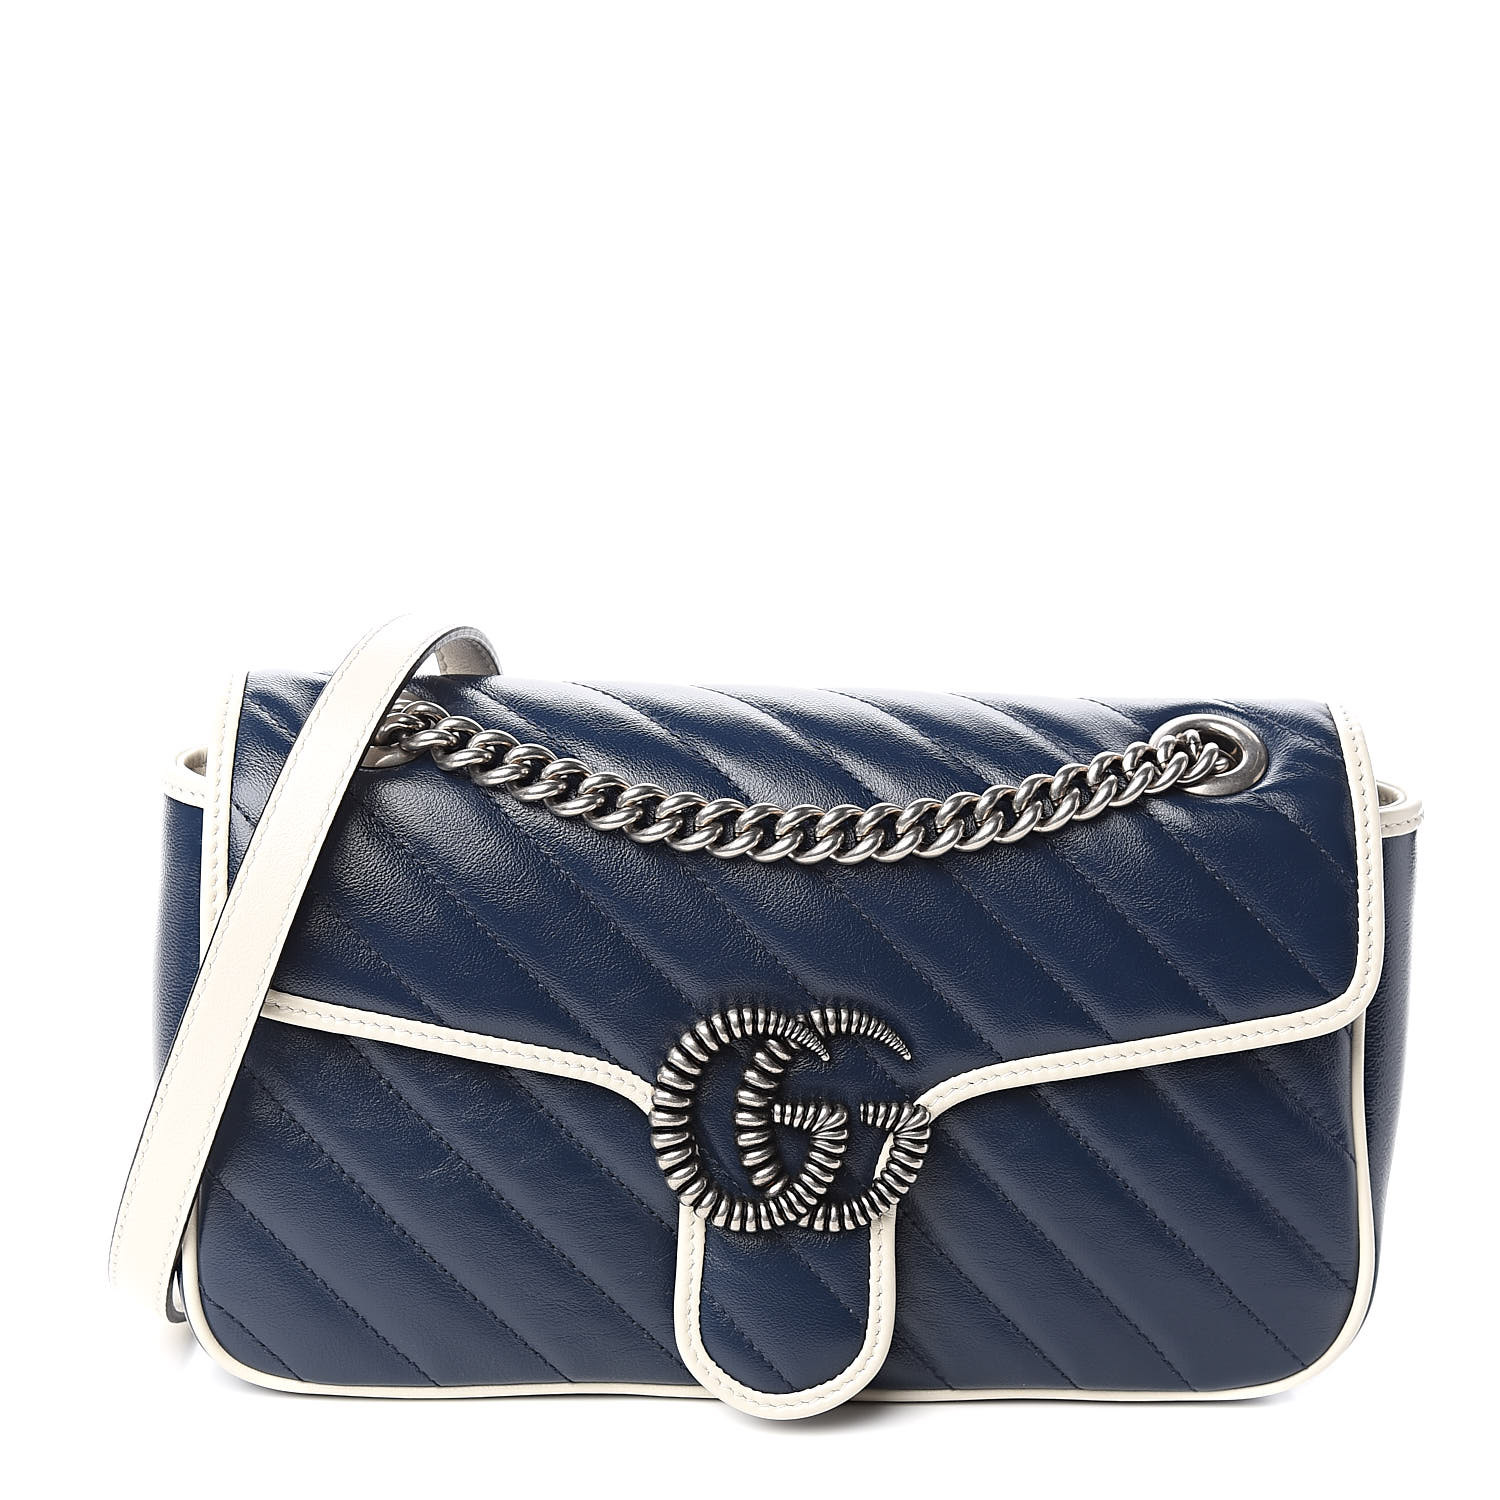 GUCCI Vintage Effect Calfskin Matelasse Small Striped GG Marmont Shoulder Bag Blue Beige 512911